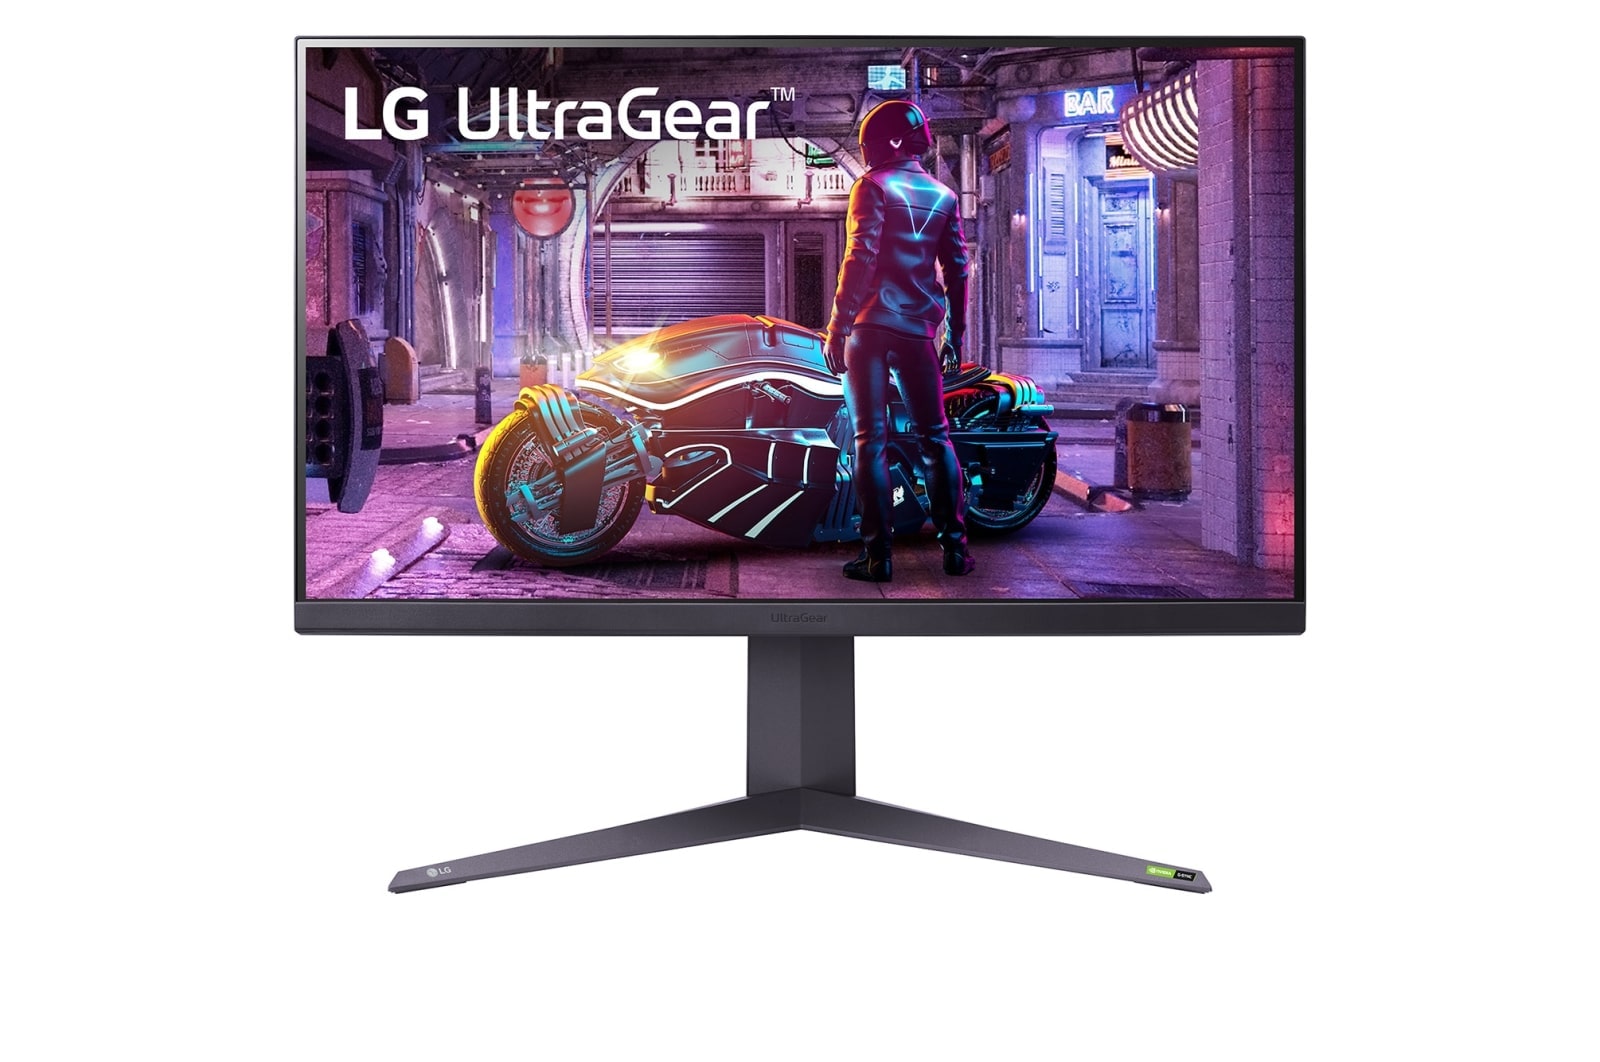 LG UltraGear 32 Inch QHD Gaming Monitor | LG UAE